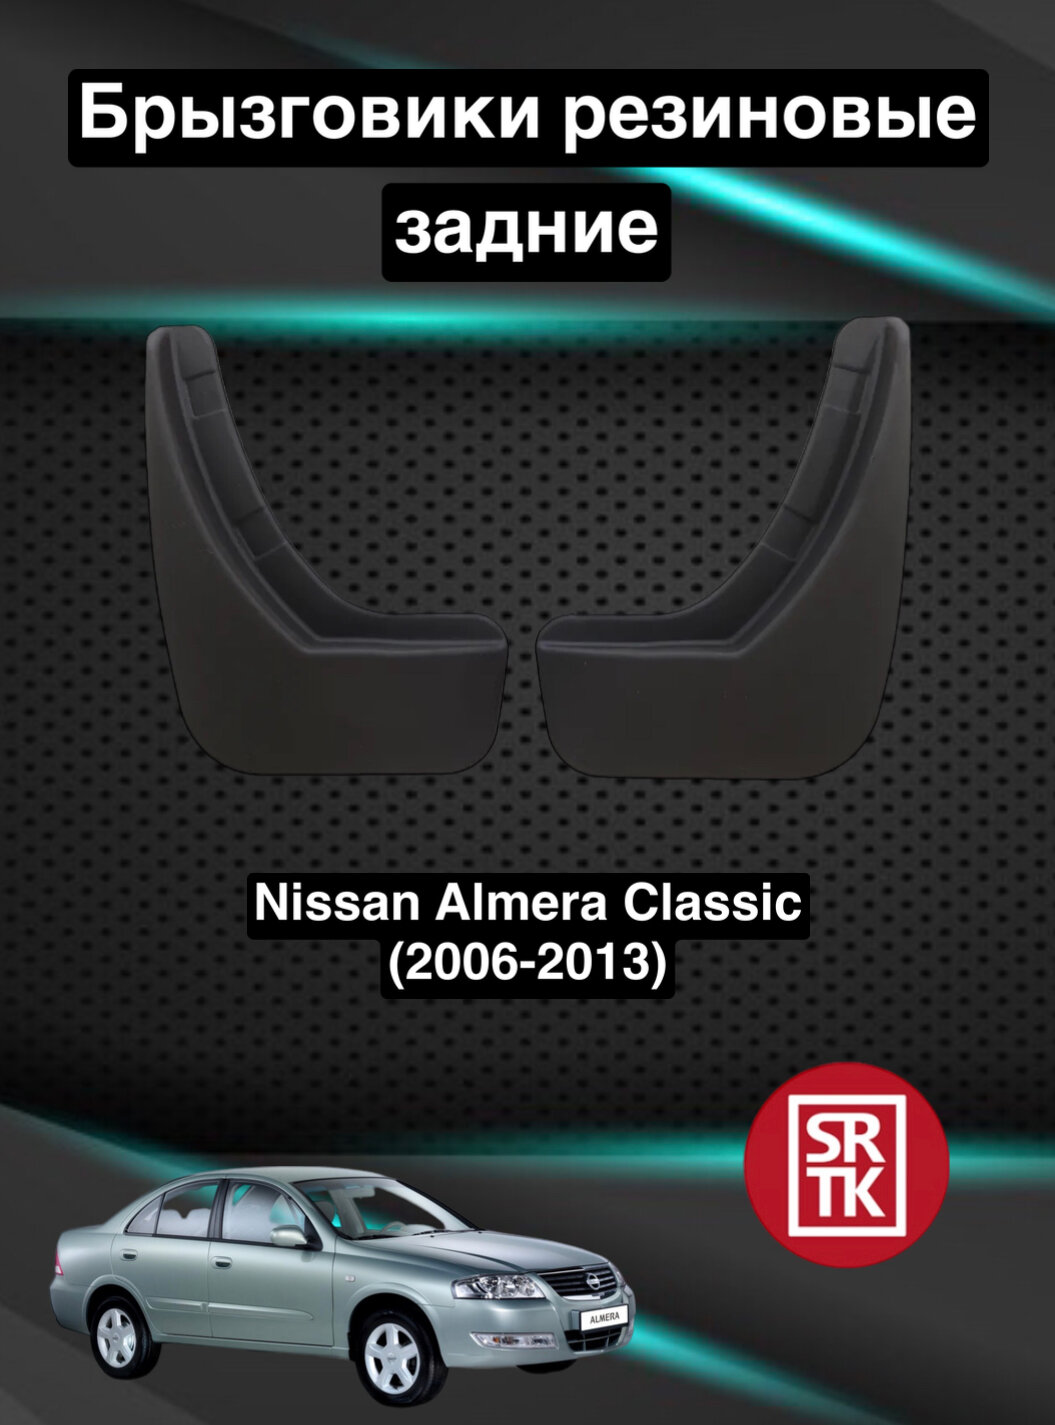 Брызговики резиновые для Ниссан Альмера Классик (2006-2013)/Nissan Almera Classic (2006-2013) SRTK задние